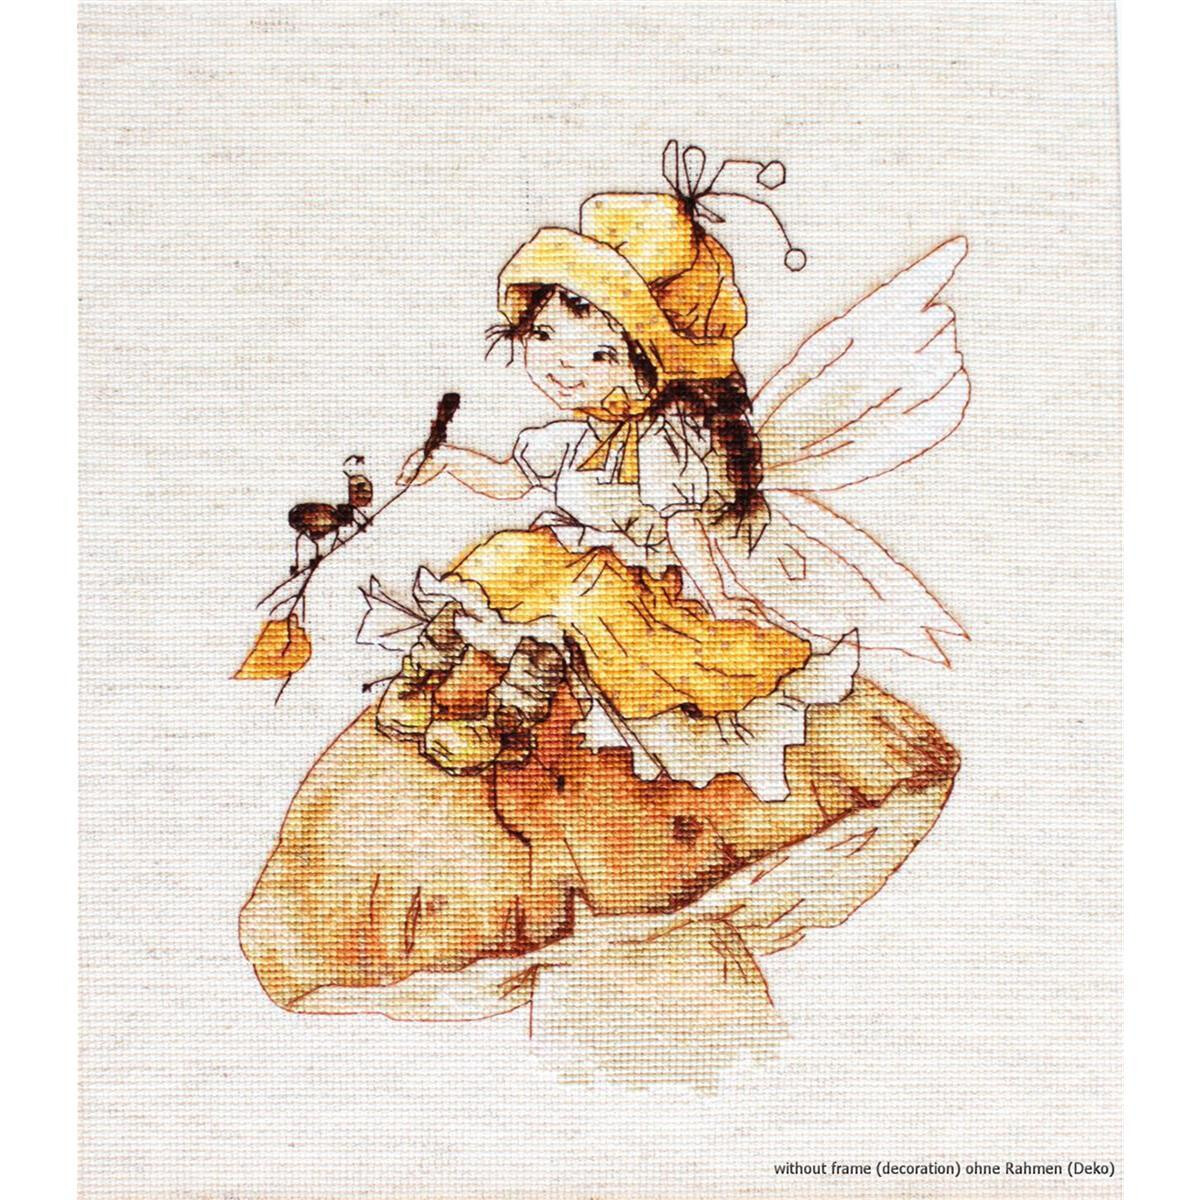 Una delicata illustrazione mostra una fata con ali...